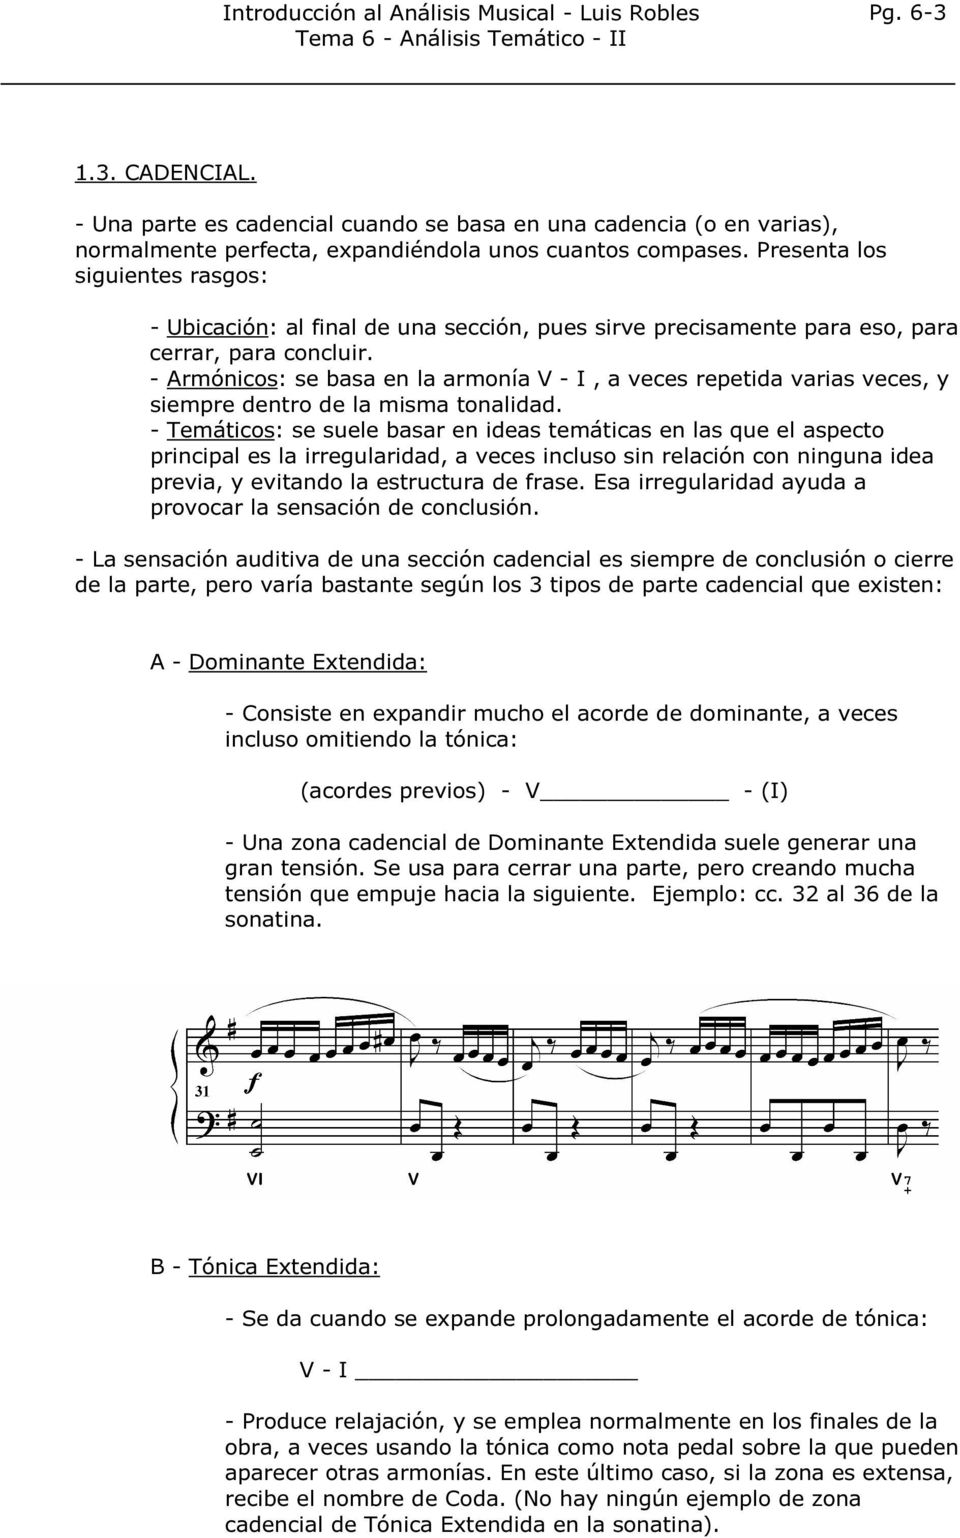 - Armónicos: se basa en la armonía V - I, a veces repetida varias veces, y siempre dentro de la misma tonalidad.